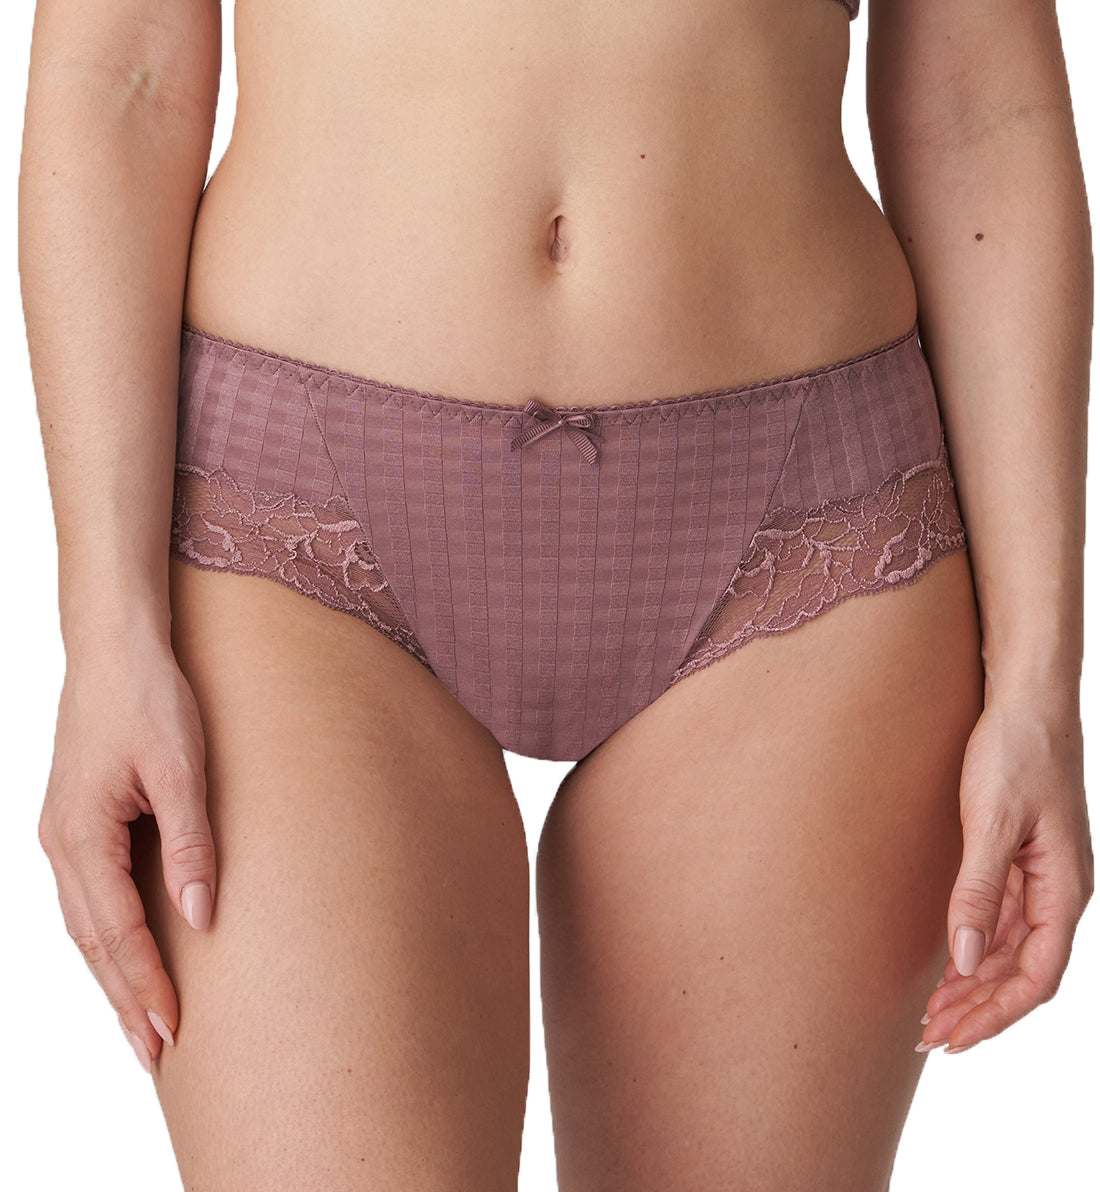 PrimaDonna Madison Matching Hotpants Panty (0562127),Medium,Satin Taupe - Satin Taupe,Medium